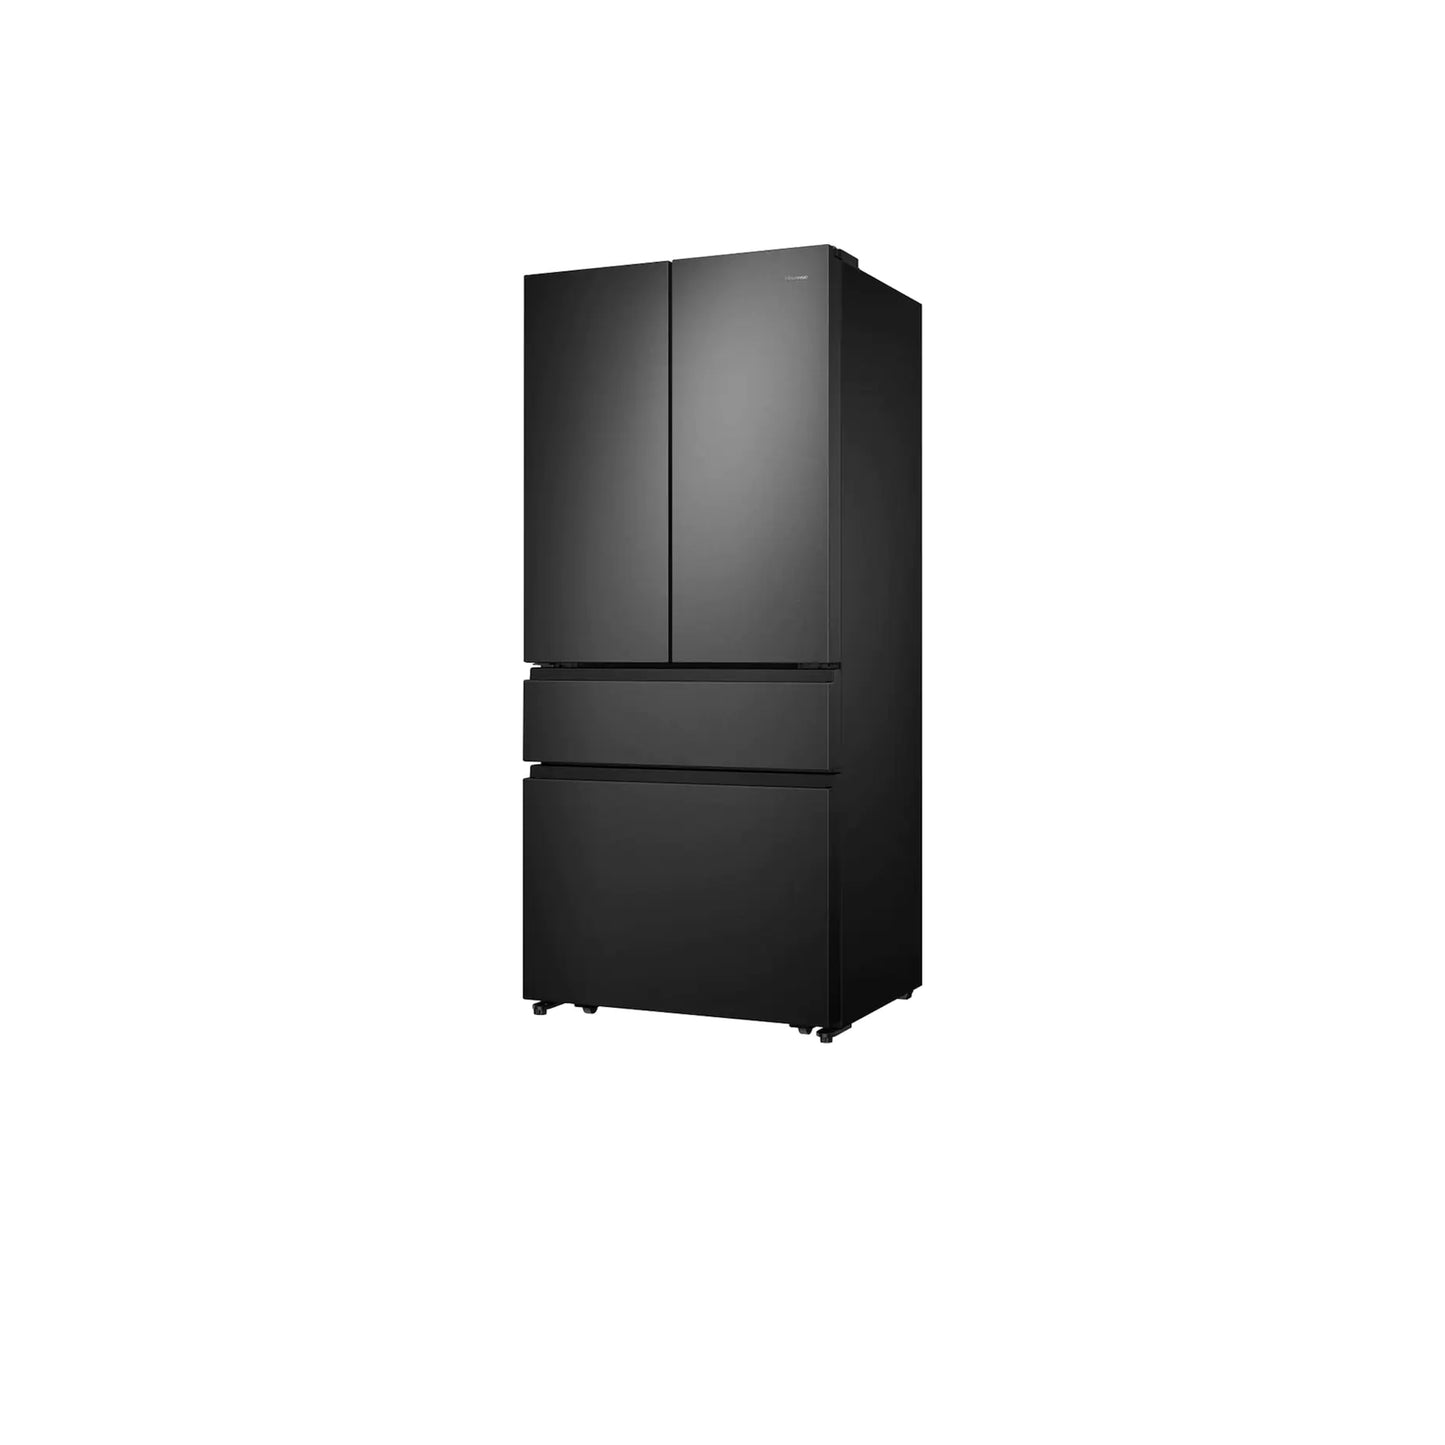 Bespoke 4-Door French Door Refrigerator (23 cu. ft.) with Beverage Center™ in White Glass.